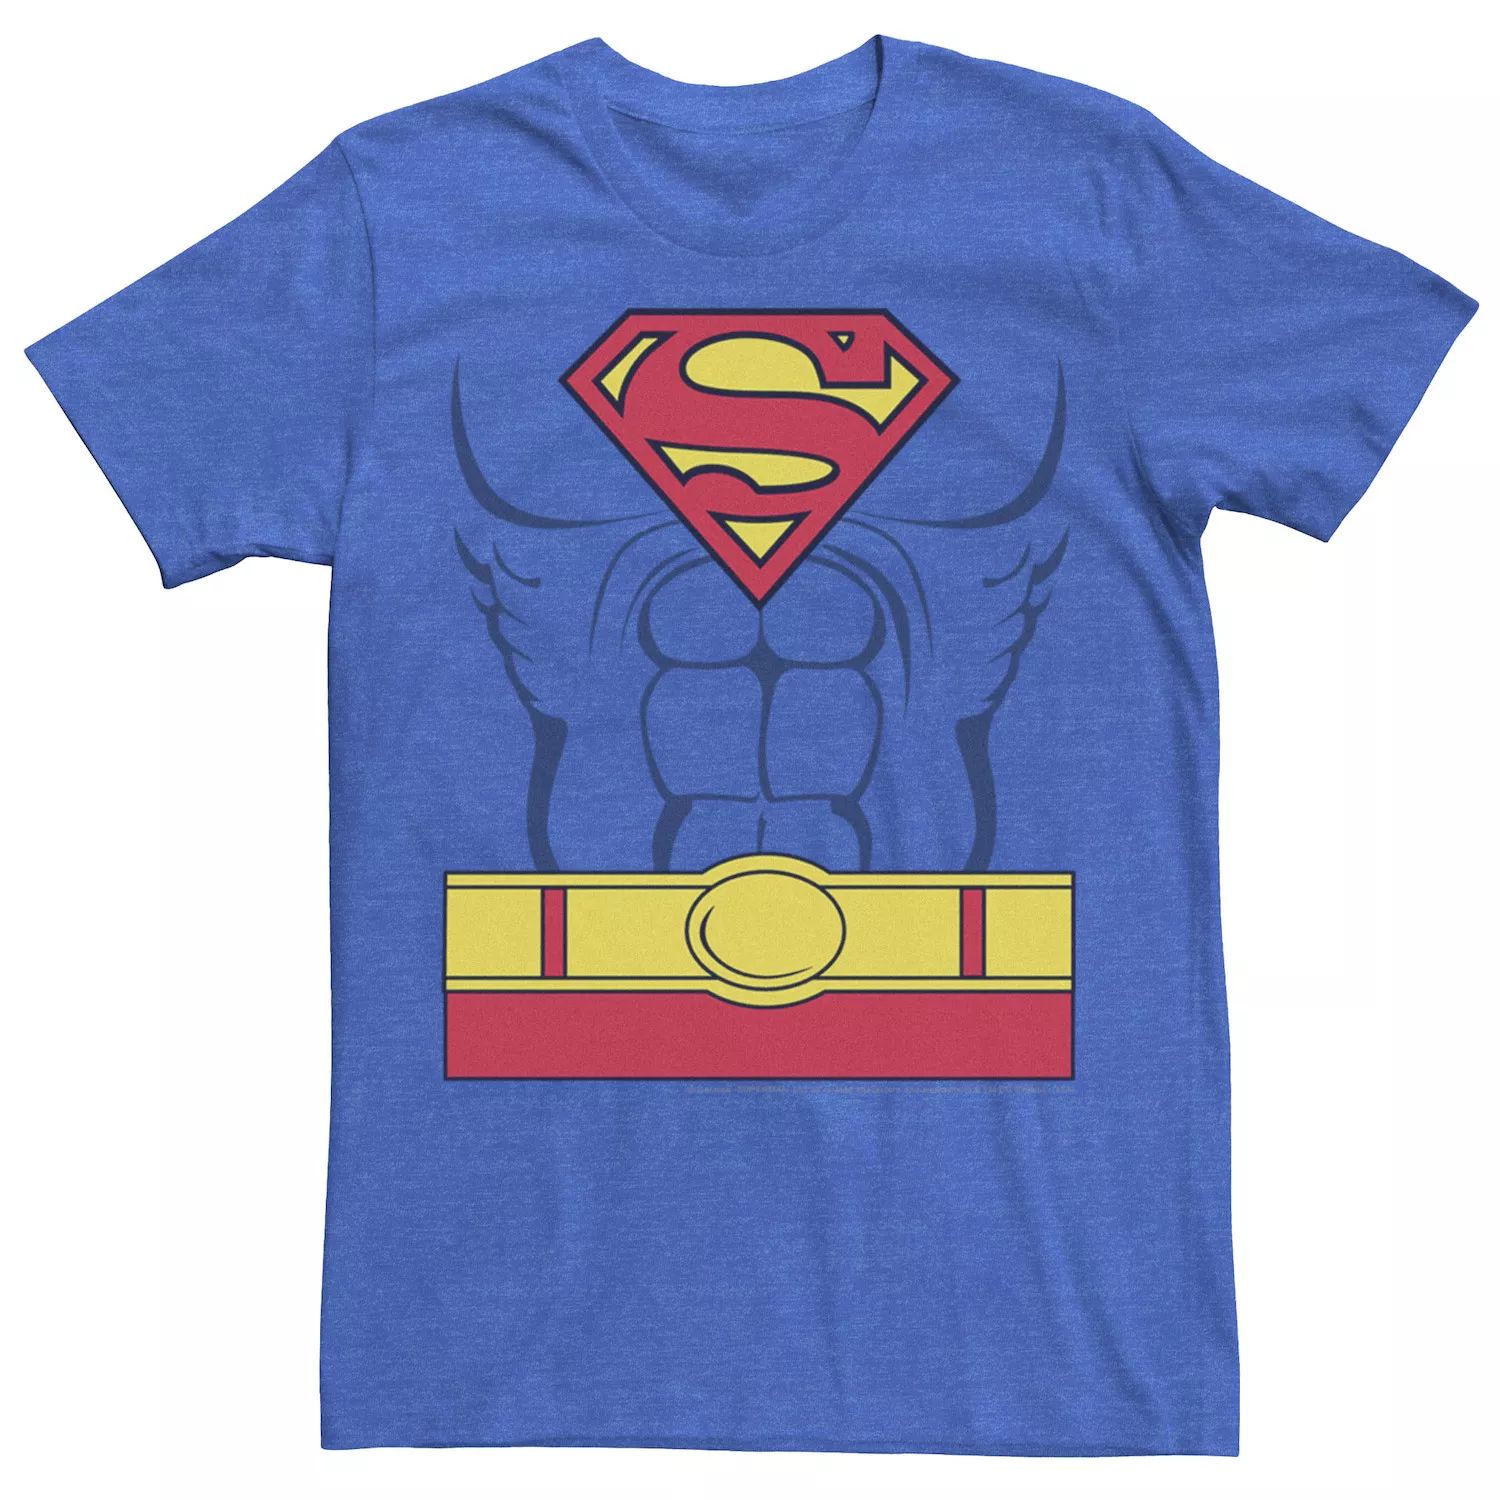 цена Мужская футболка с костюмом Супермена DC Comics